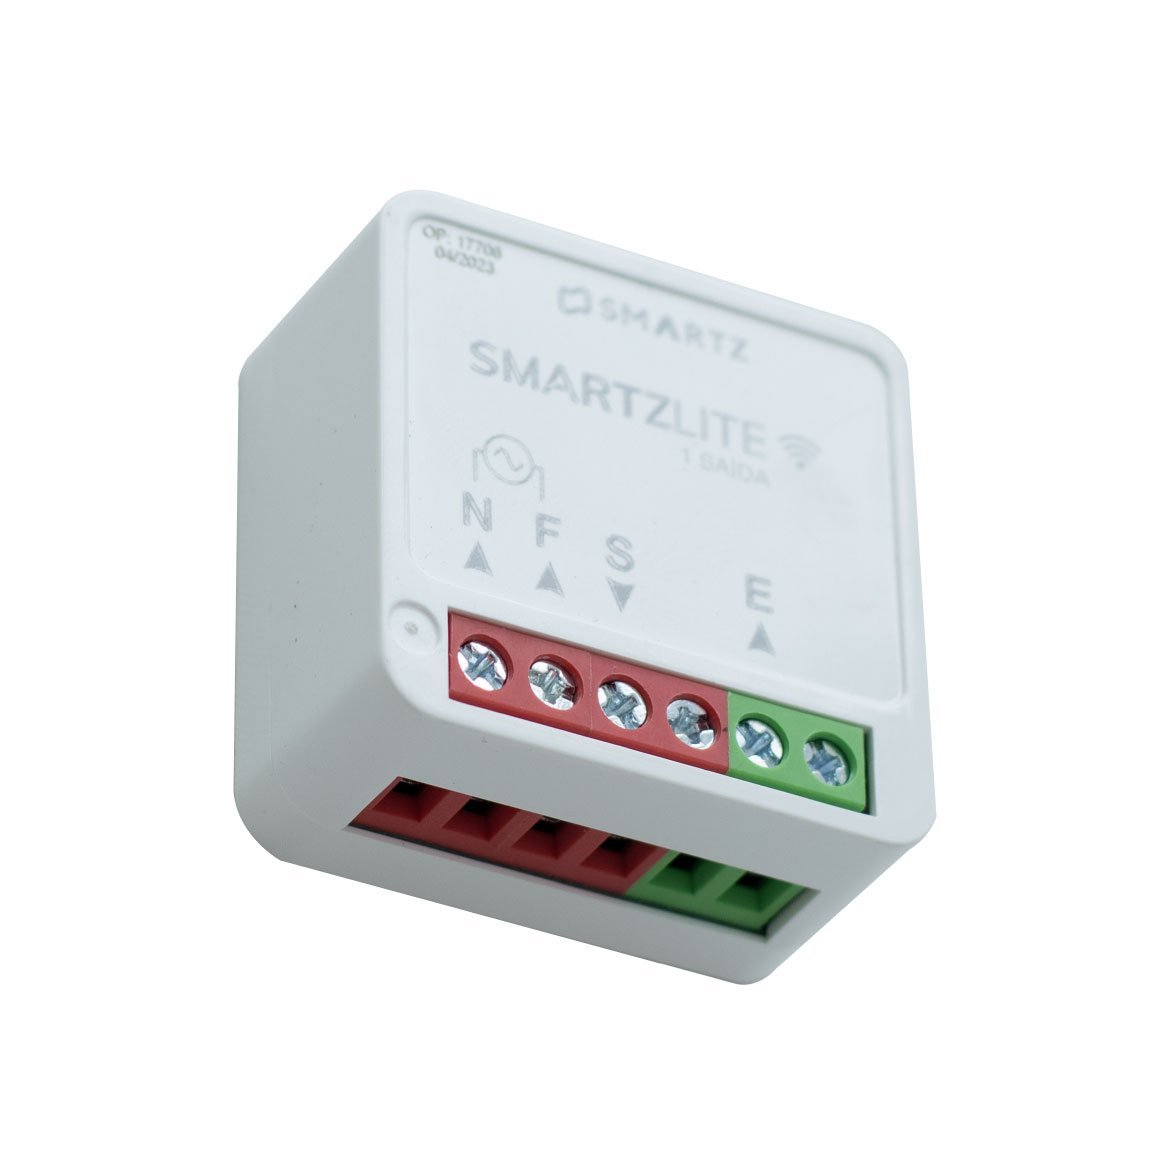 Controlador Programável Smartz Lite 1 Canal Stz1391n St2917 - 4